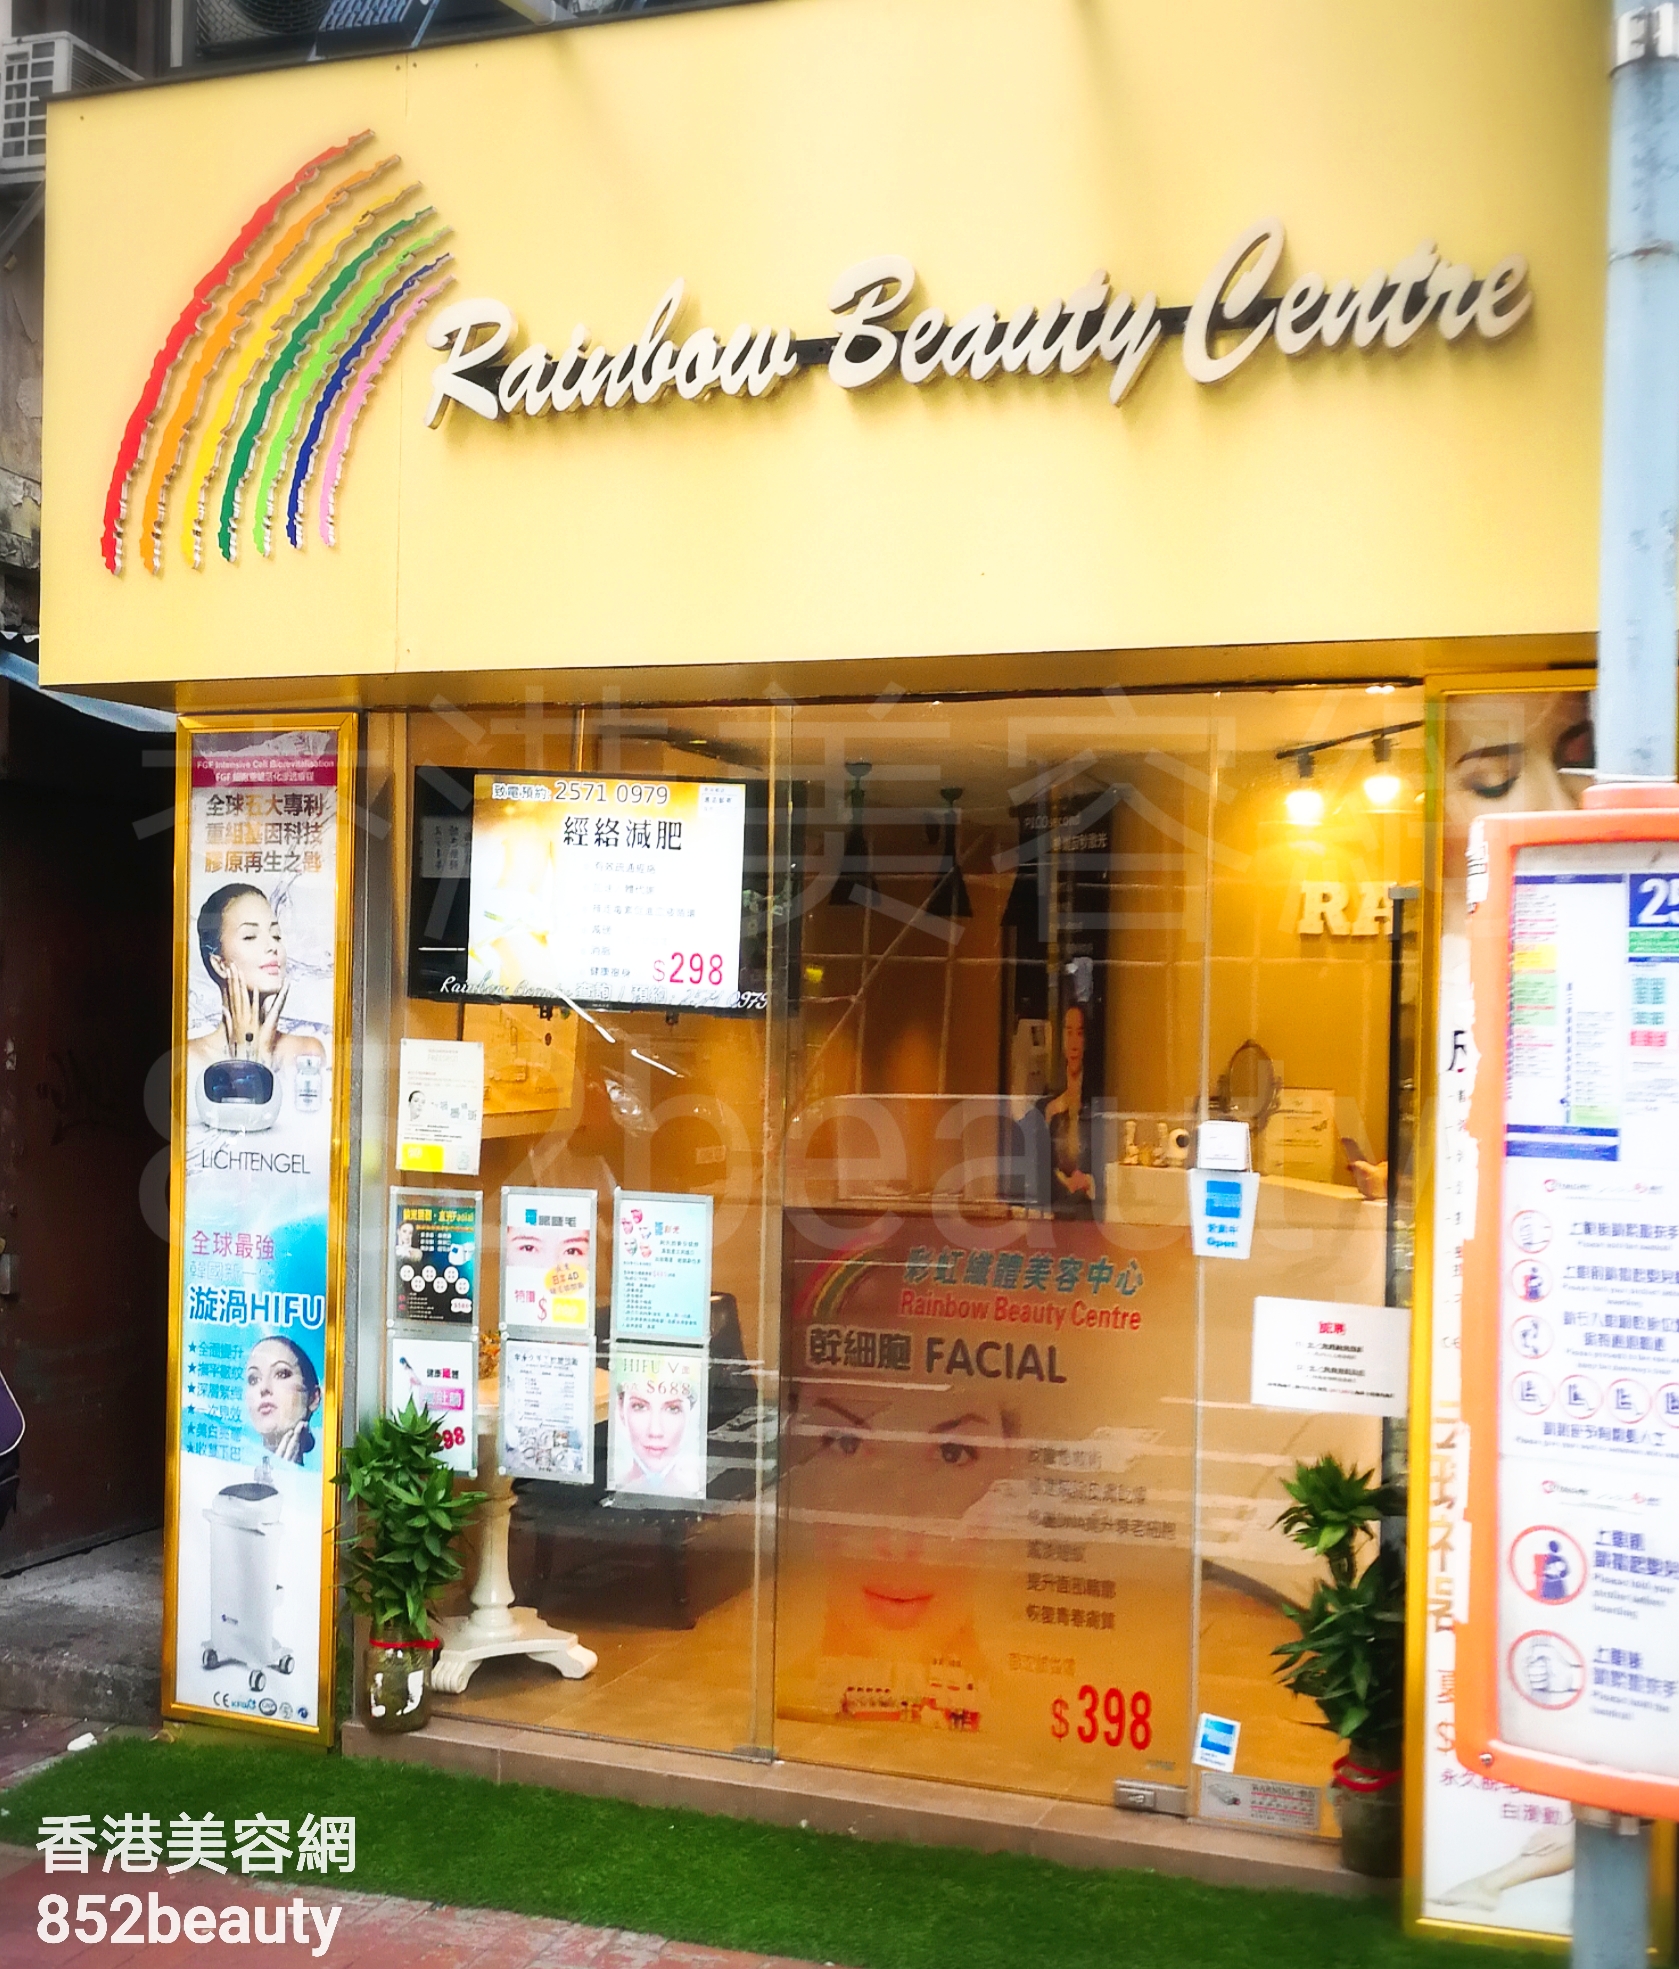 Eye Care: Rainbow Beauty Centre